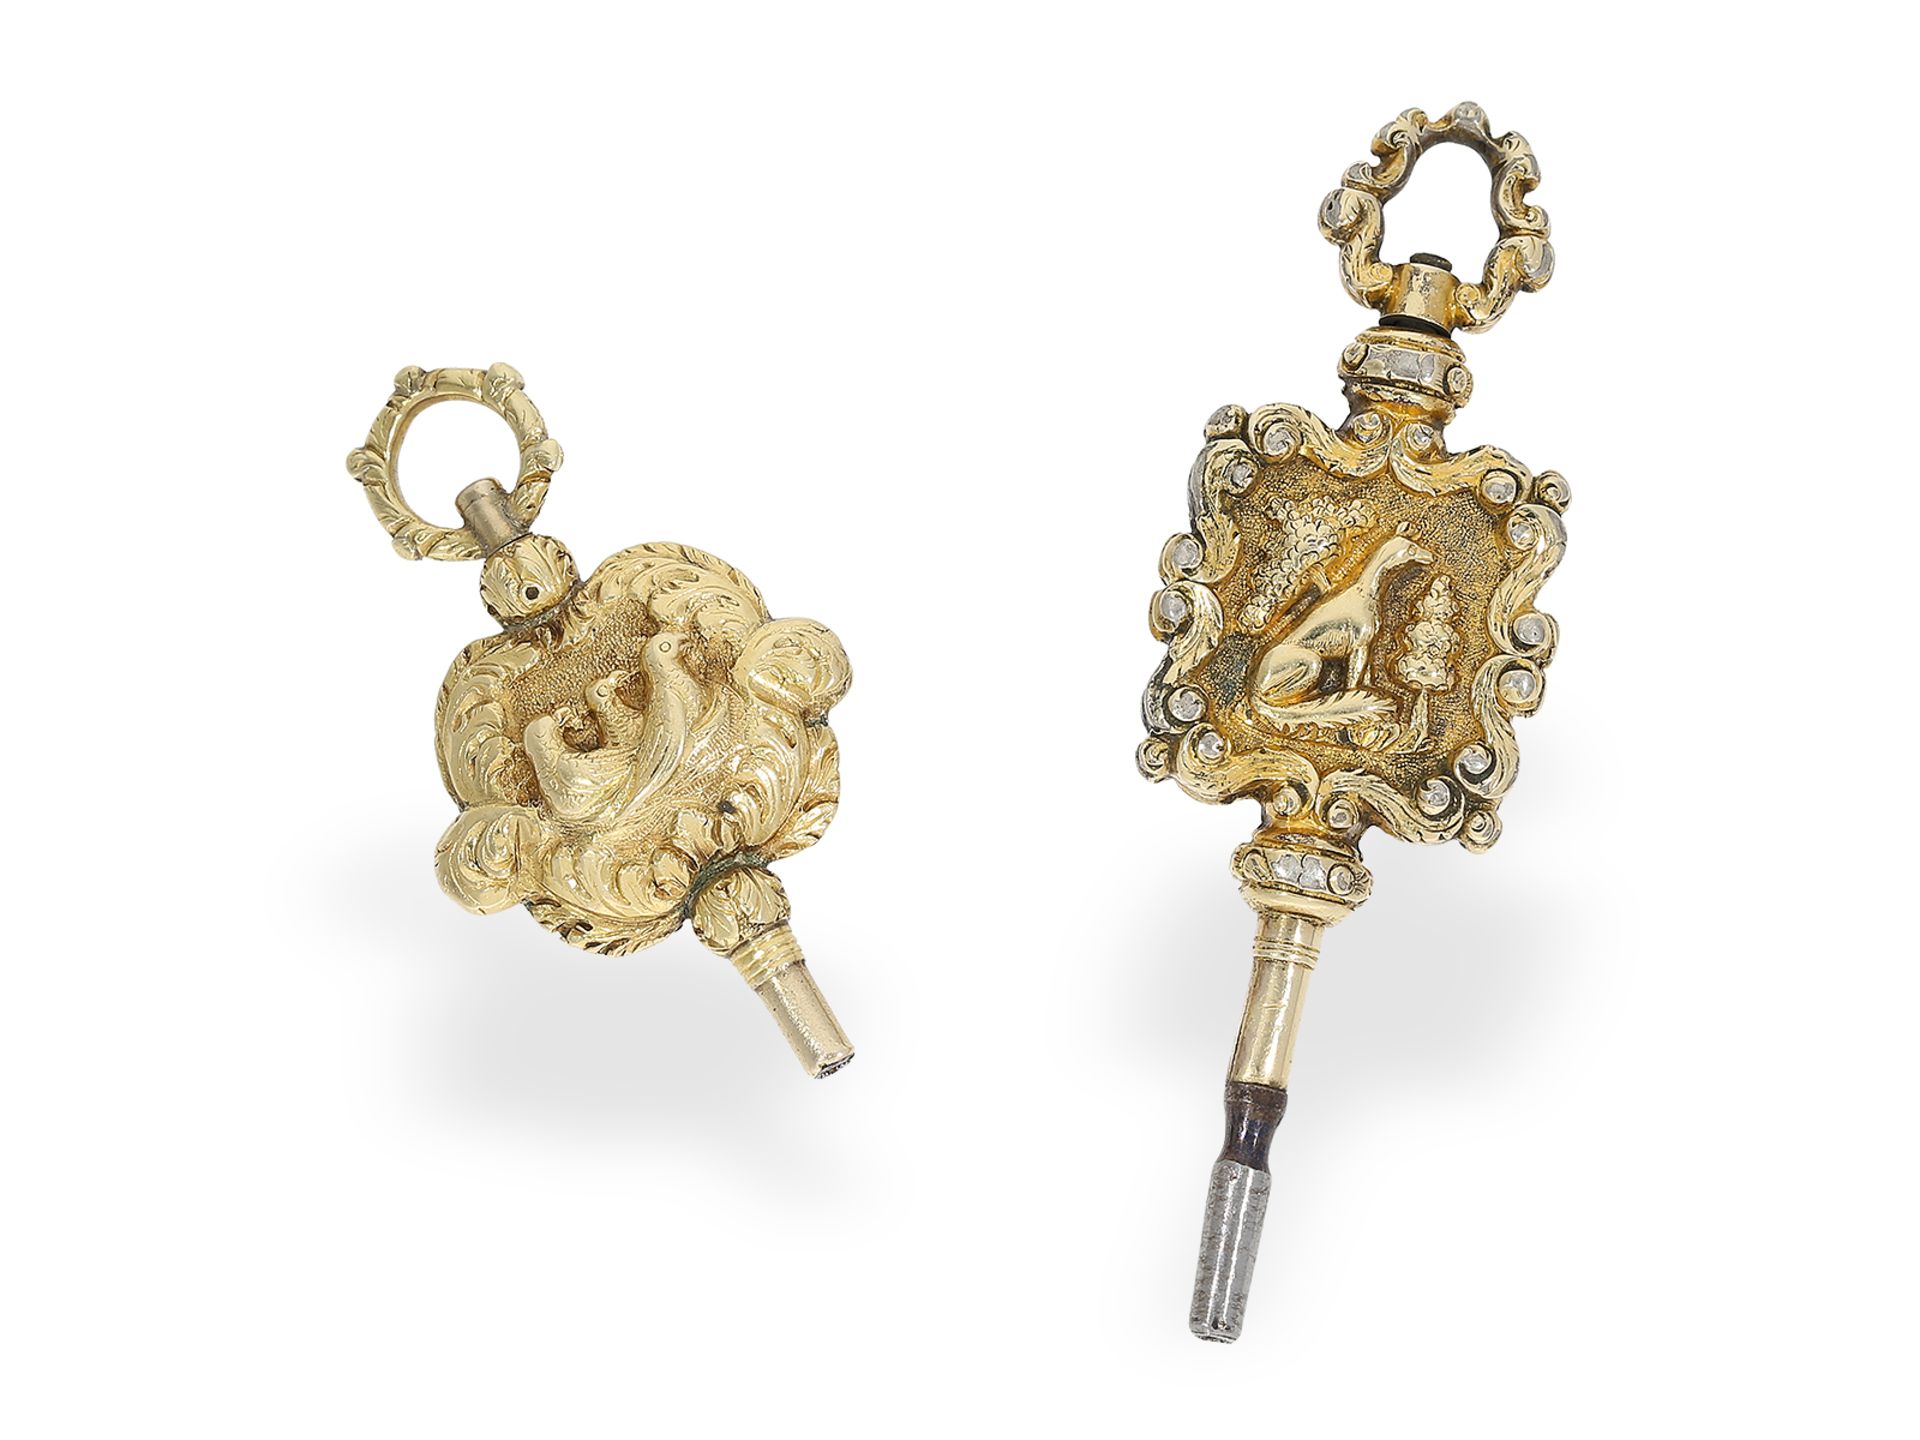 Uhrenschlüssel: 2 sehr seltene Spindeluhrenschlüssel mit Hochrelief, um 1800 - Bild 2 aus 2